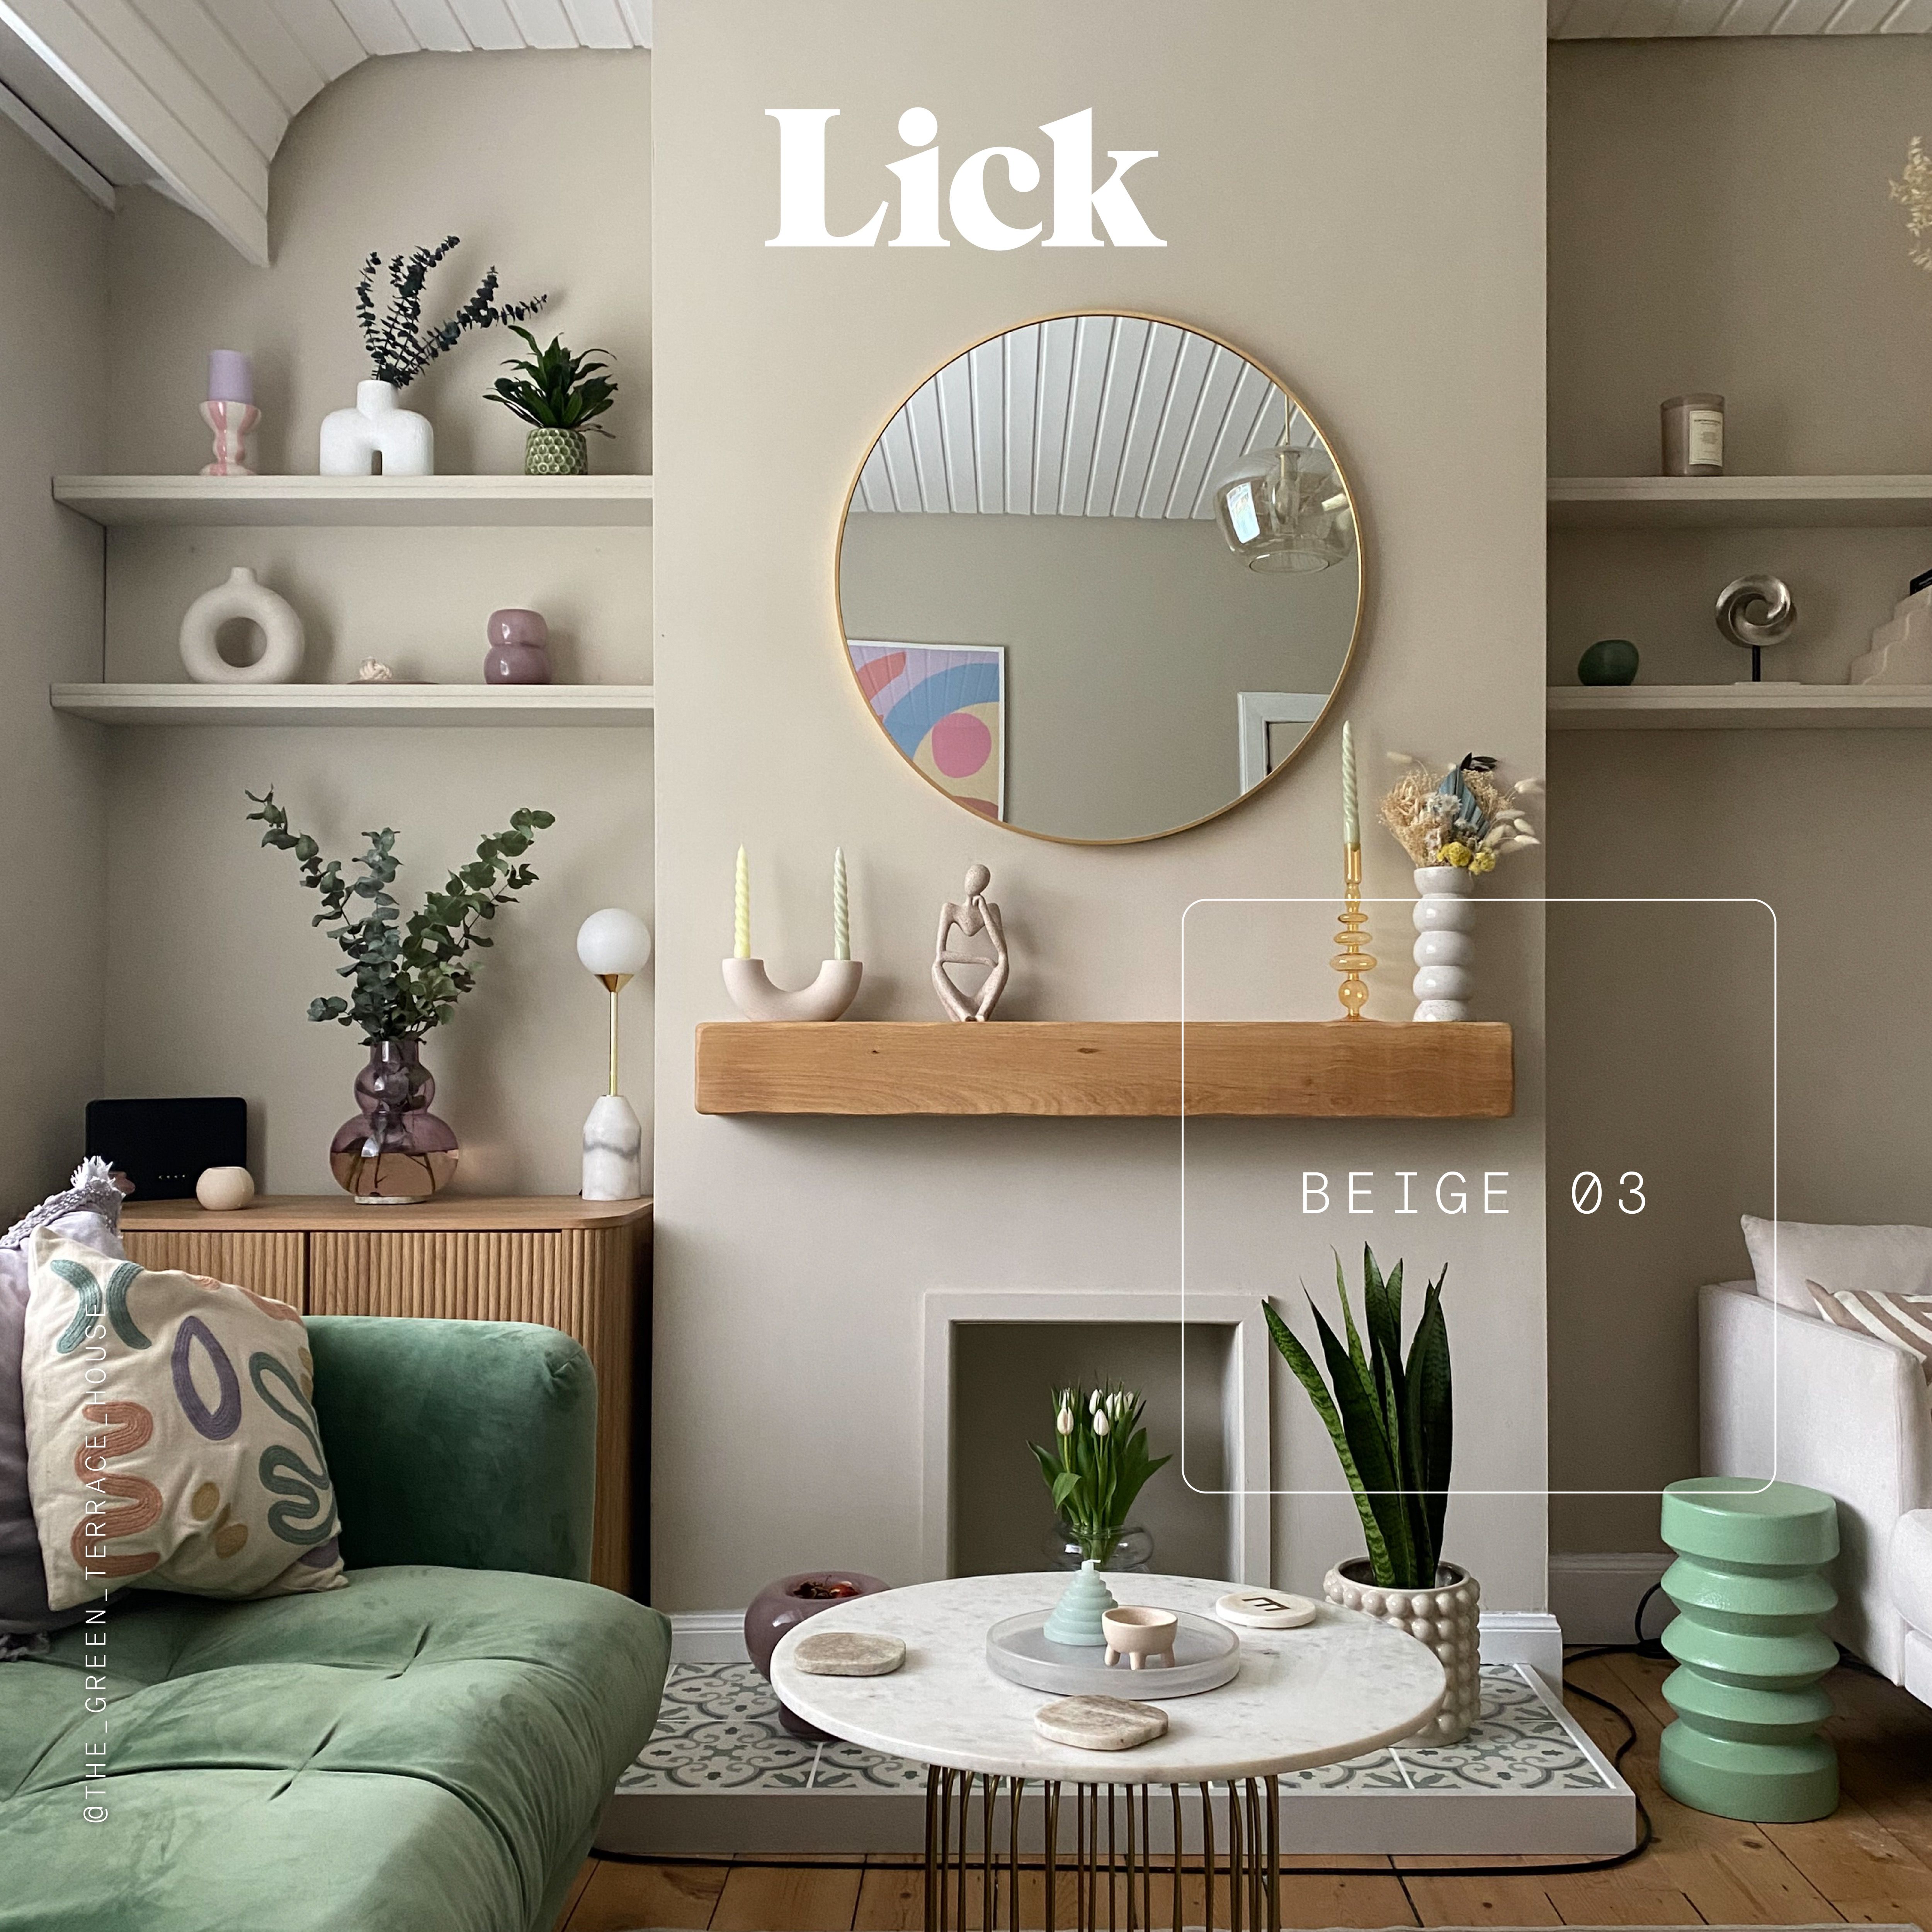 Lick Beige Paint - Reassuring Balanced Beige with Grey & Yellow Undertones - Interior - 1 Gal - Beige 04